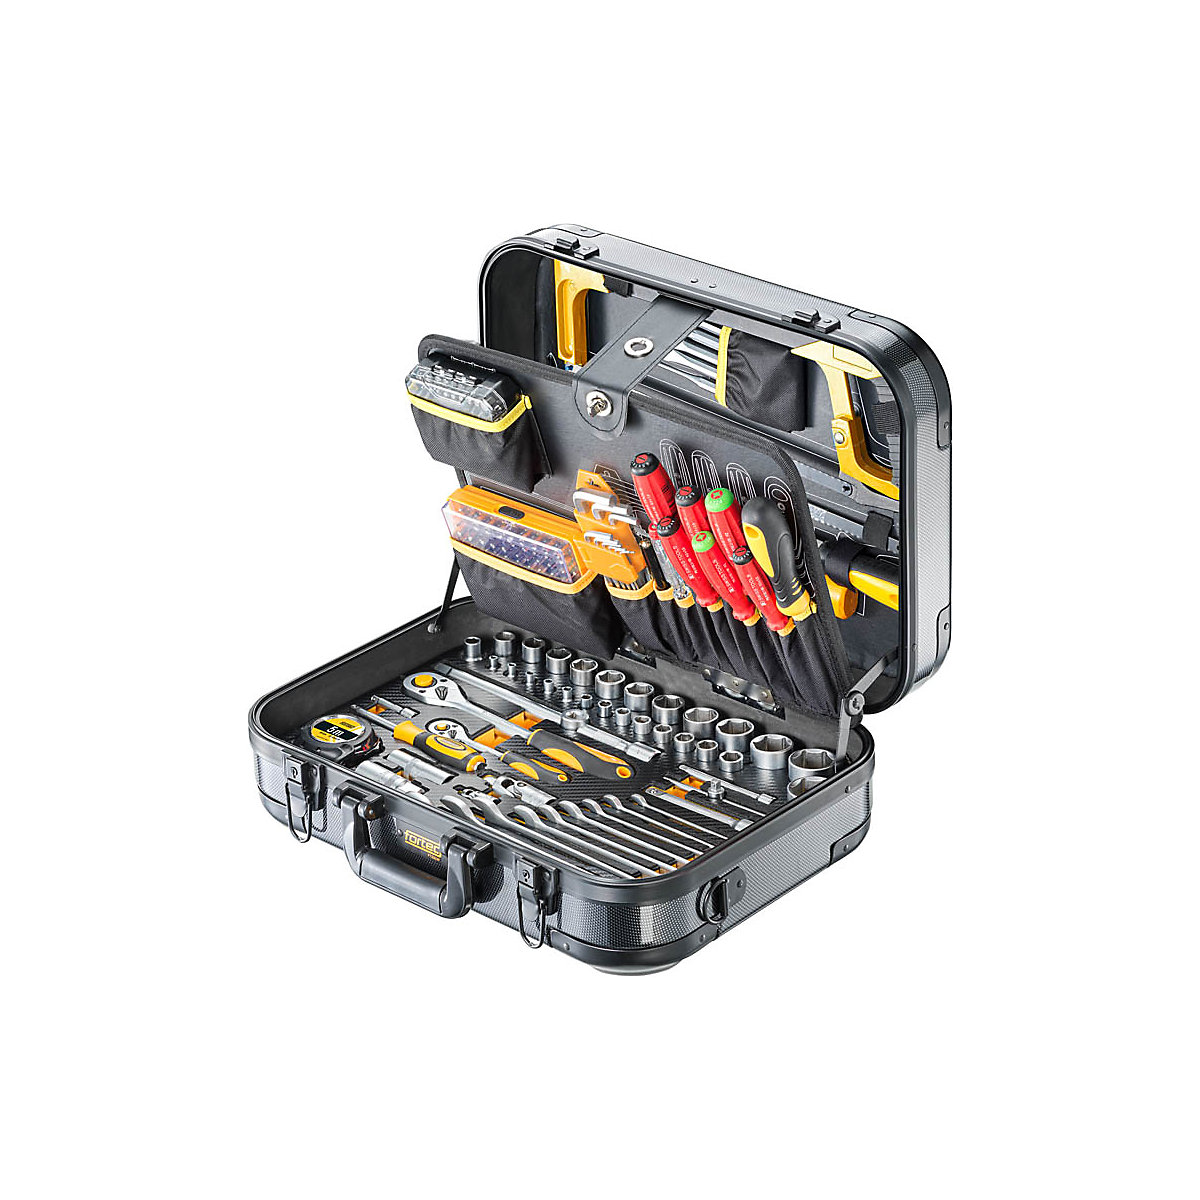 Premium tool case